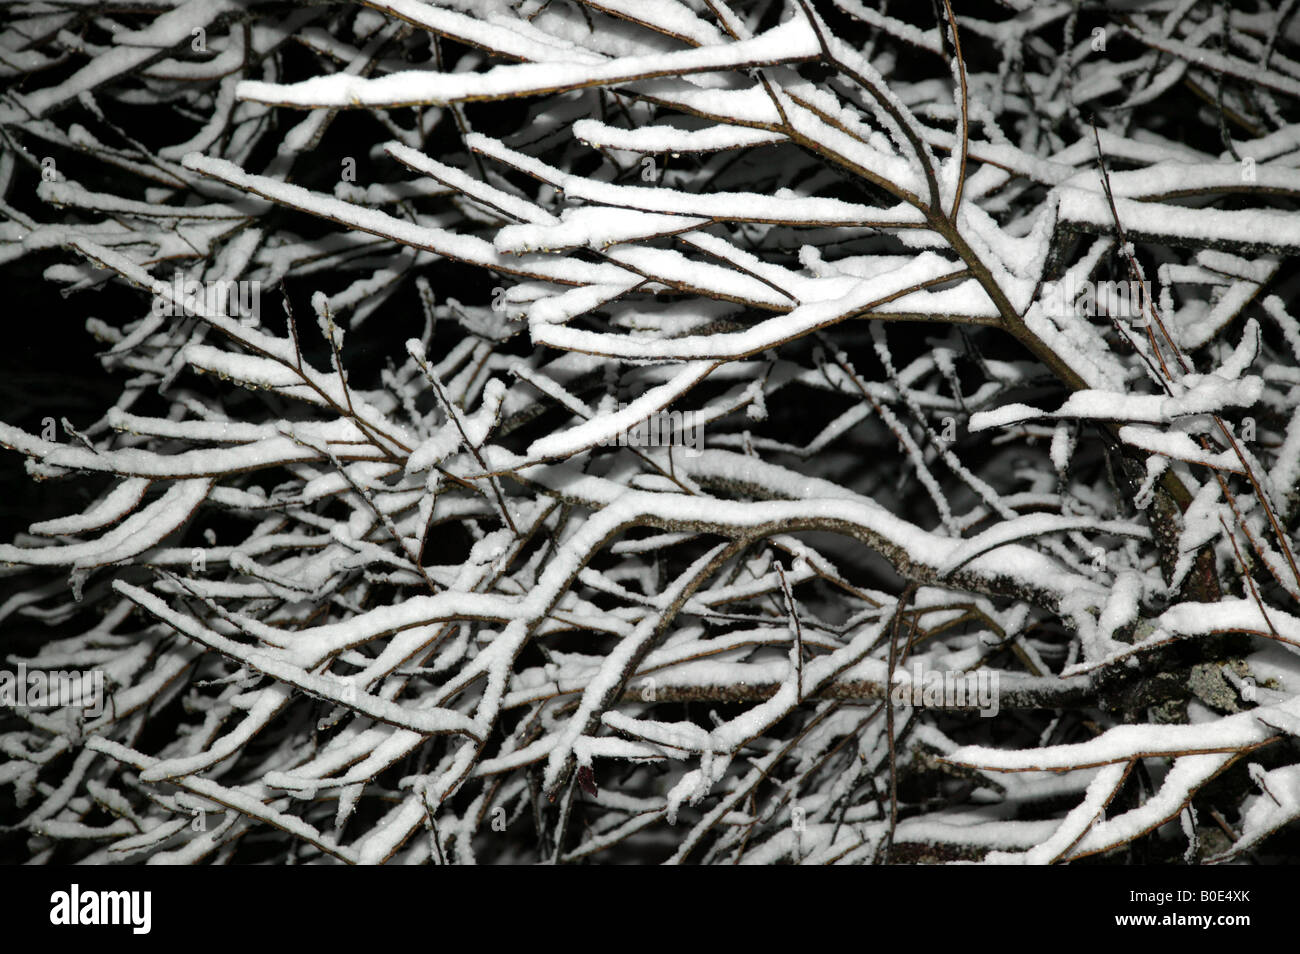 Assistée Flash close-up photo de nuit de branches couvertes de neige Banque D'Images